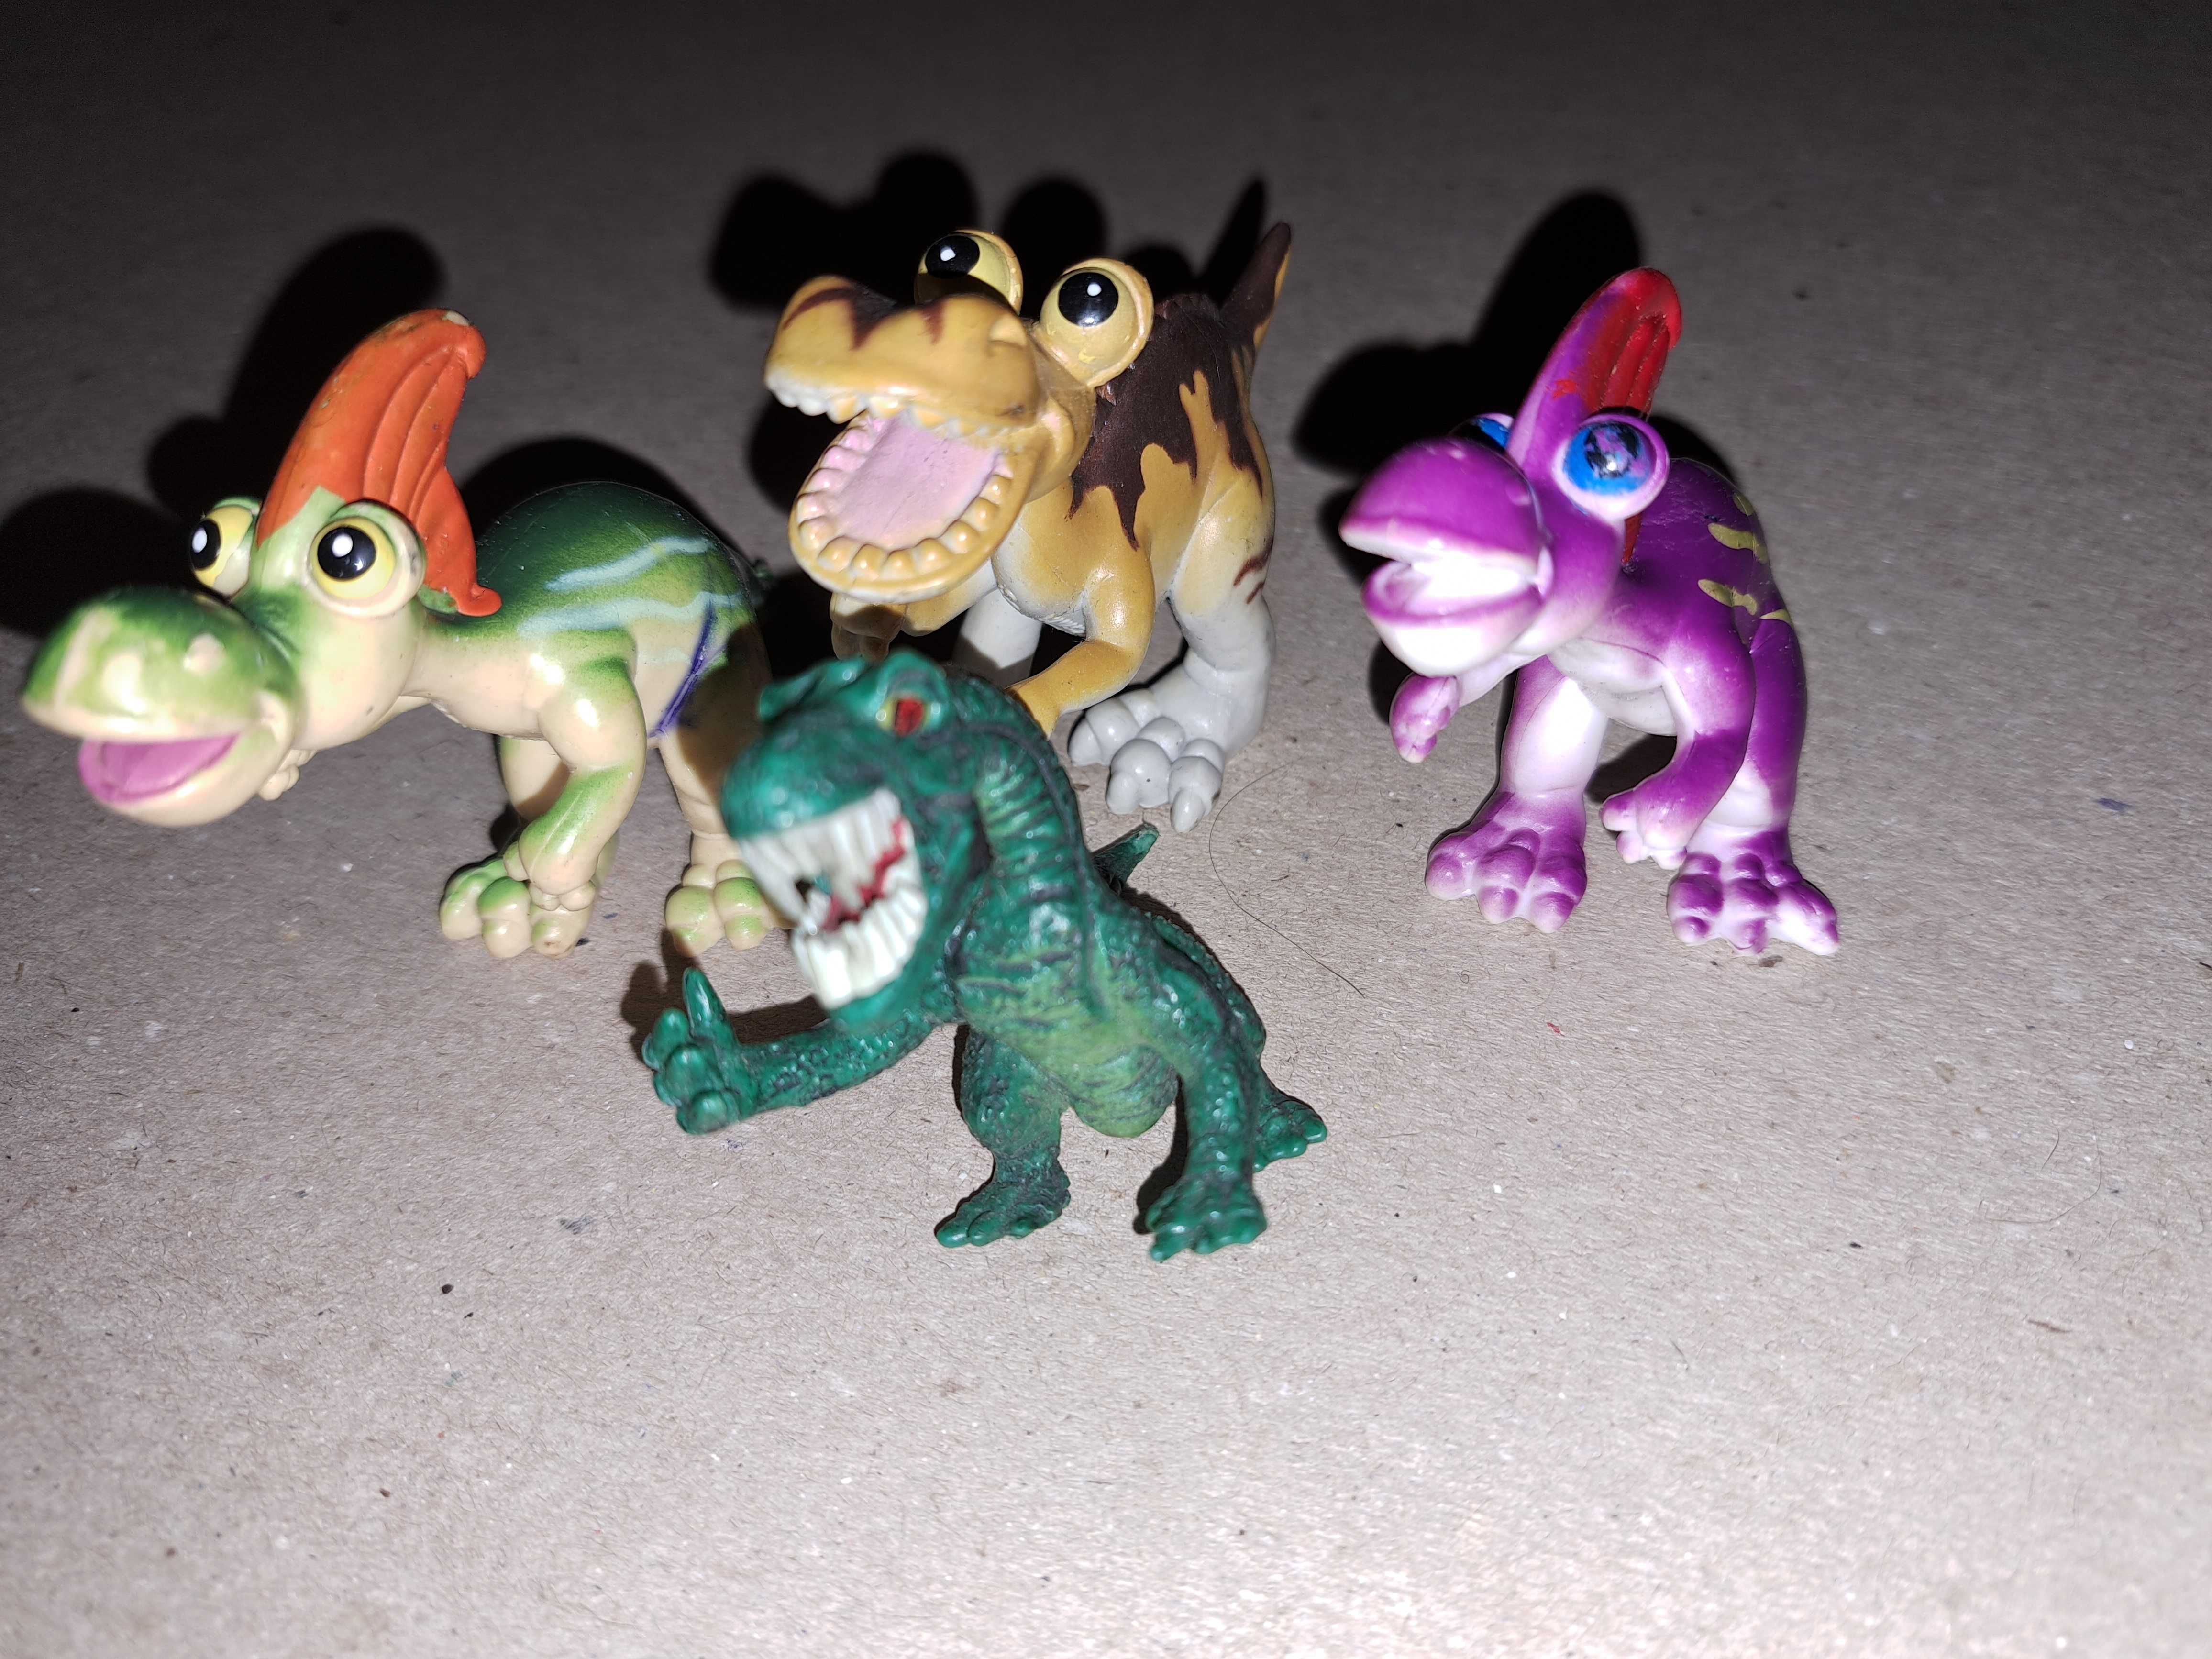 Фигурки динозаври за игра